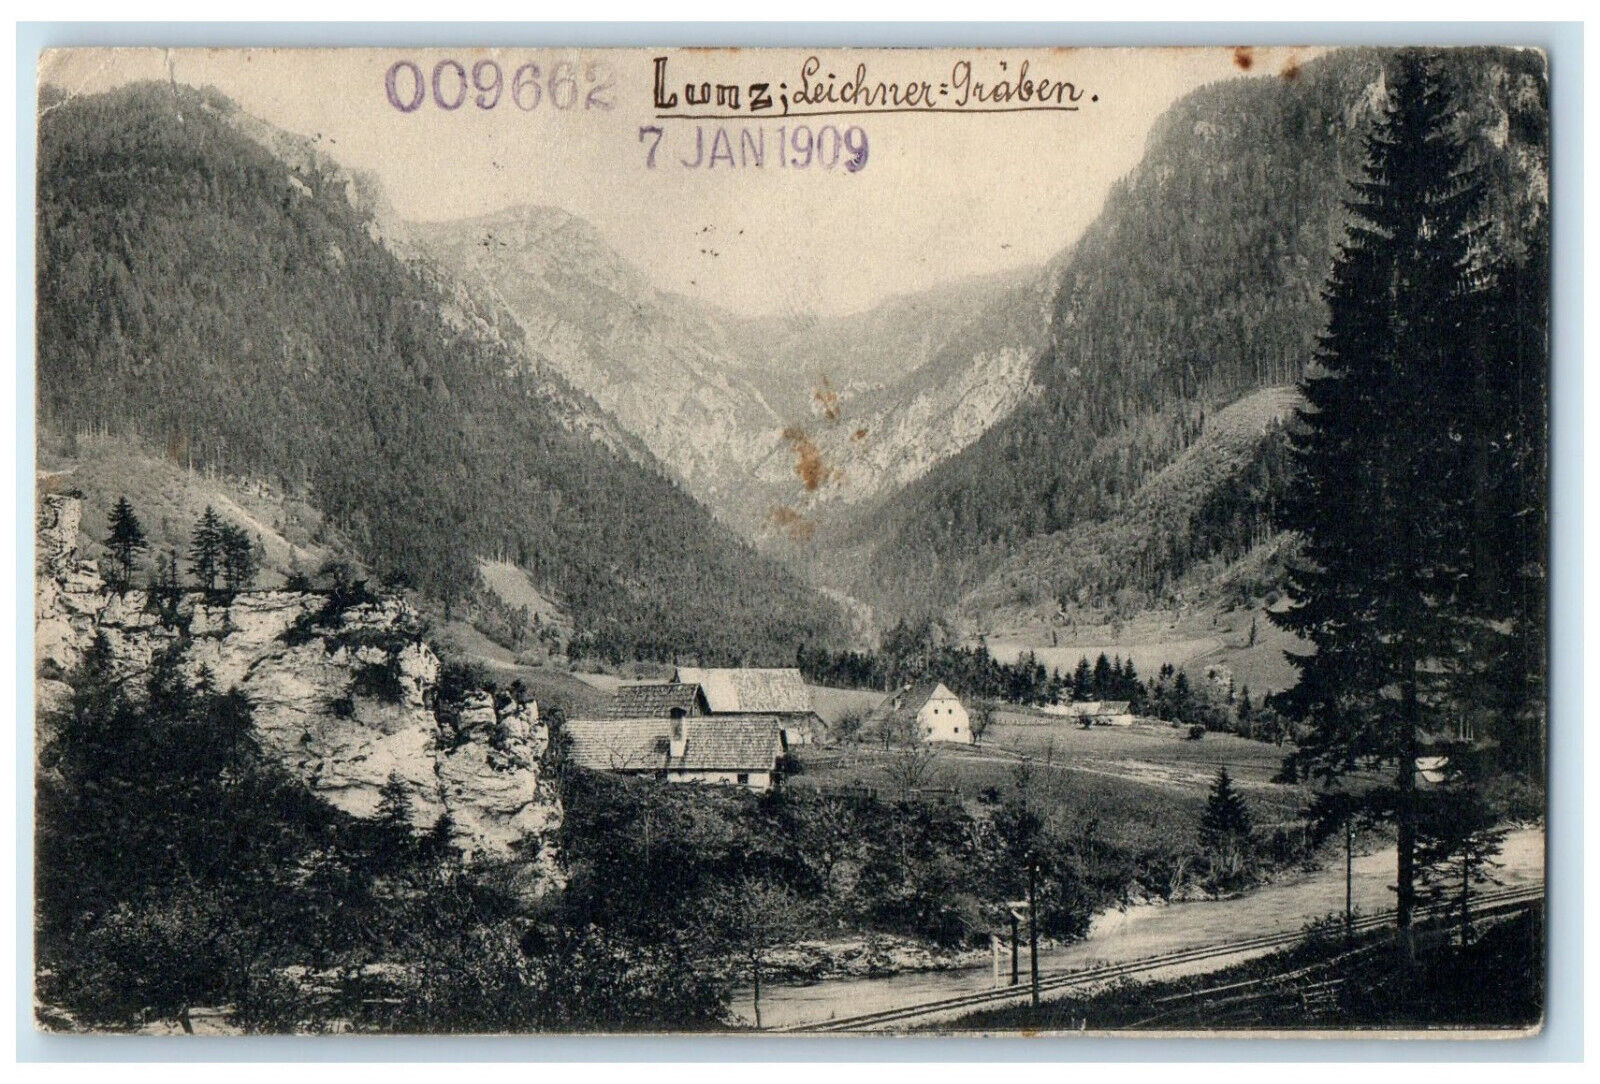 1909 Lunz Leichner Graben Augsburg Bavaria Germany Antique Postcard